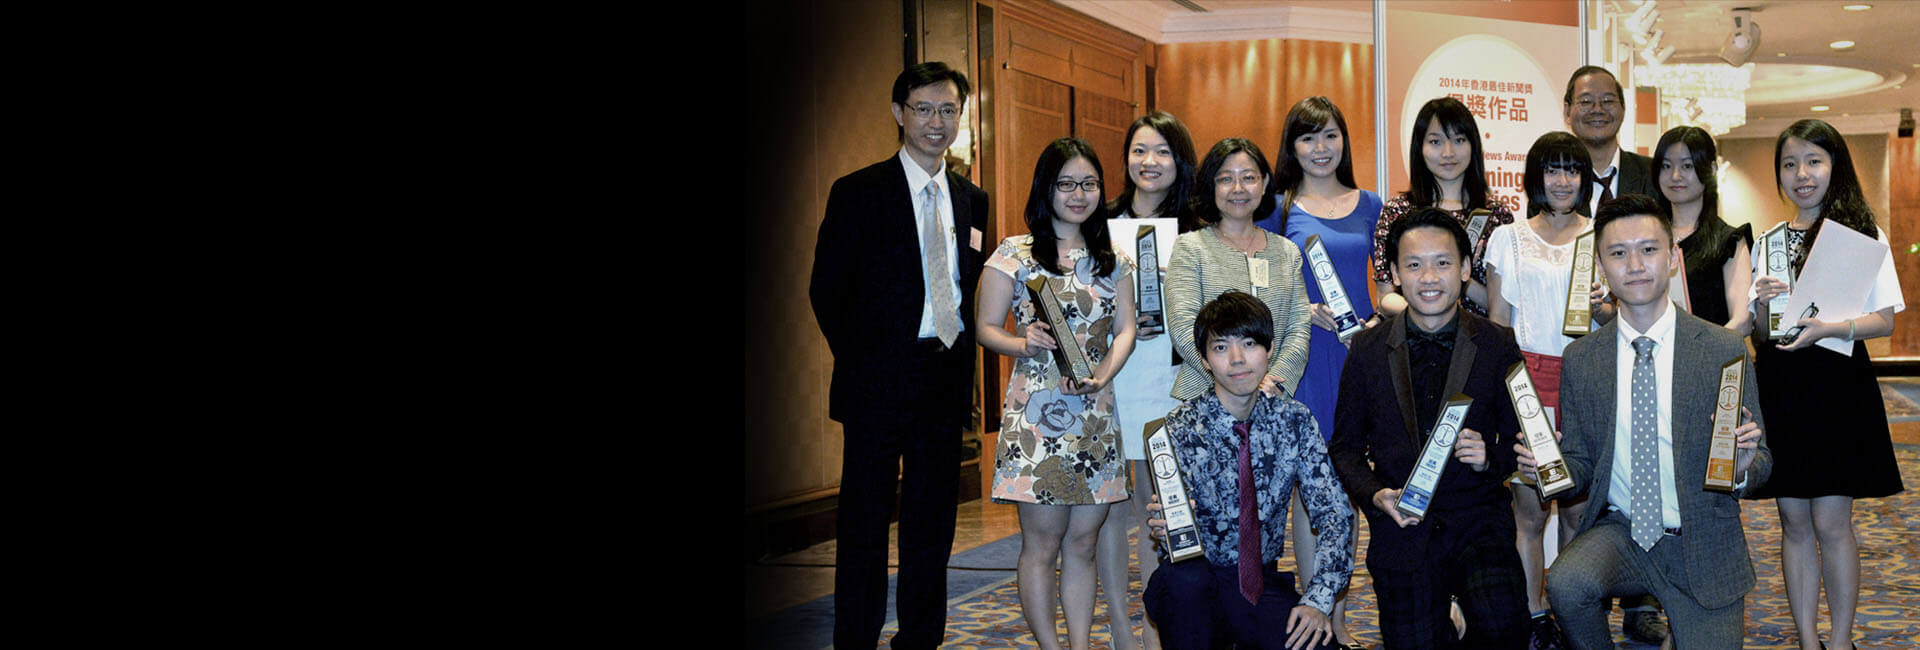 Hong Kong News Awards 2014